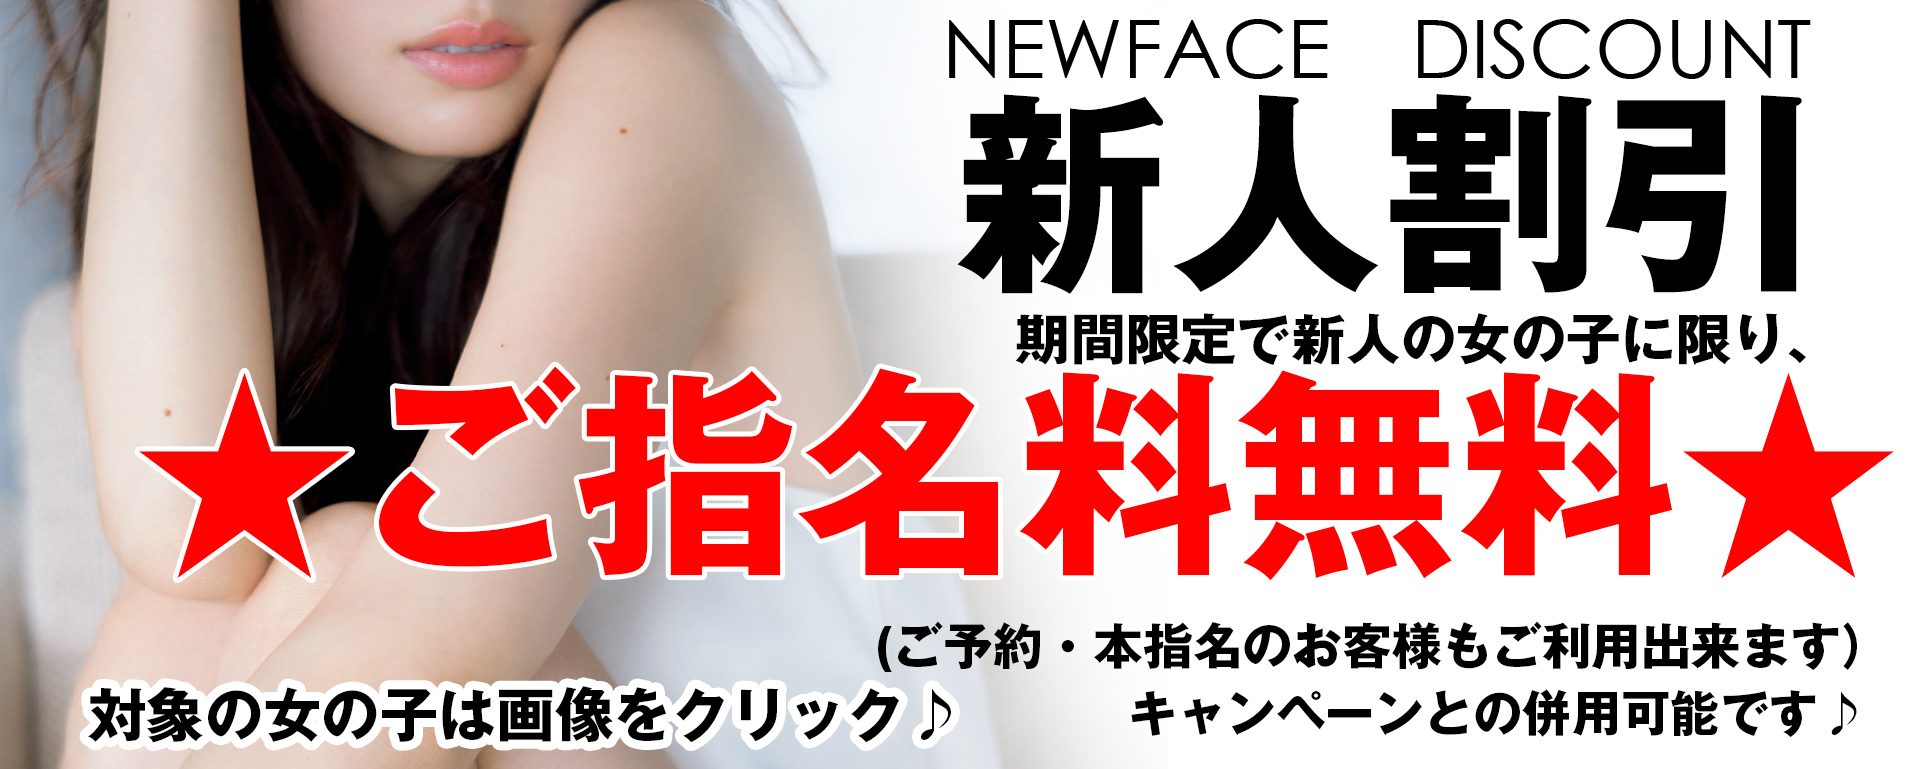 newface_discount.jpg